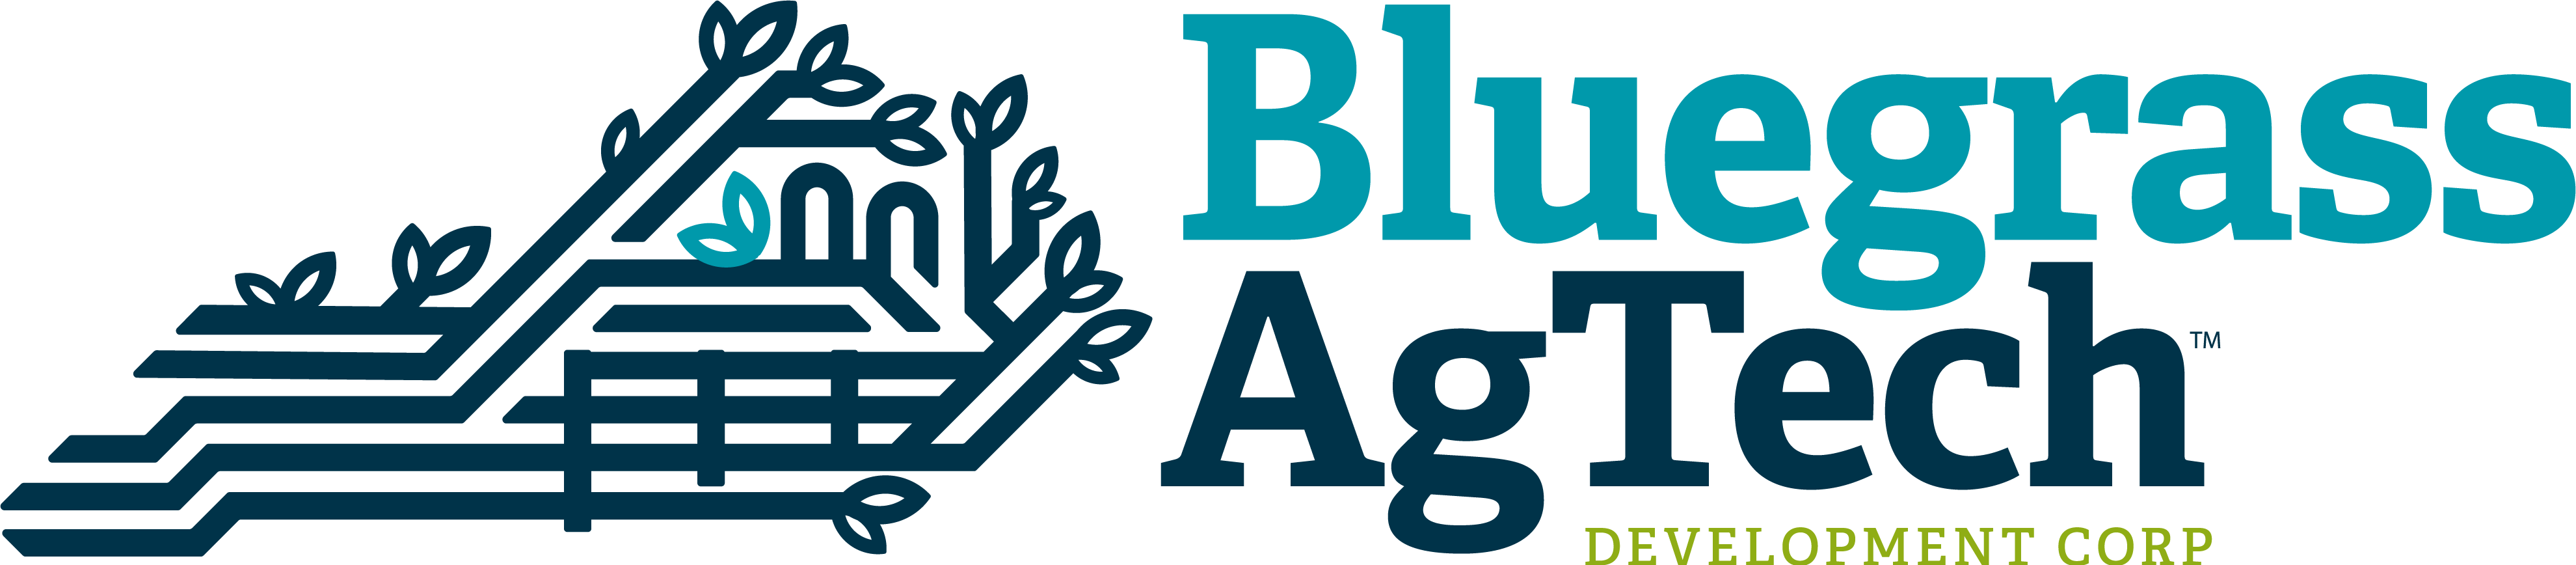 Bluegrass AgTech logo RGB